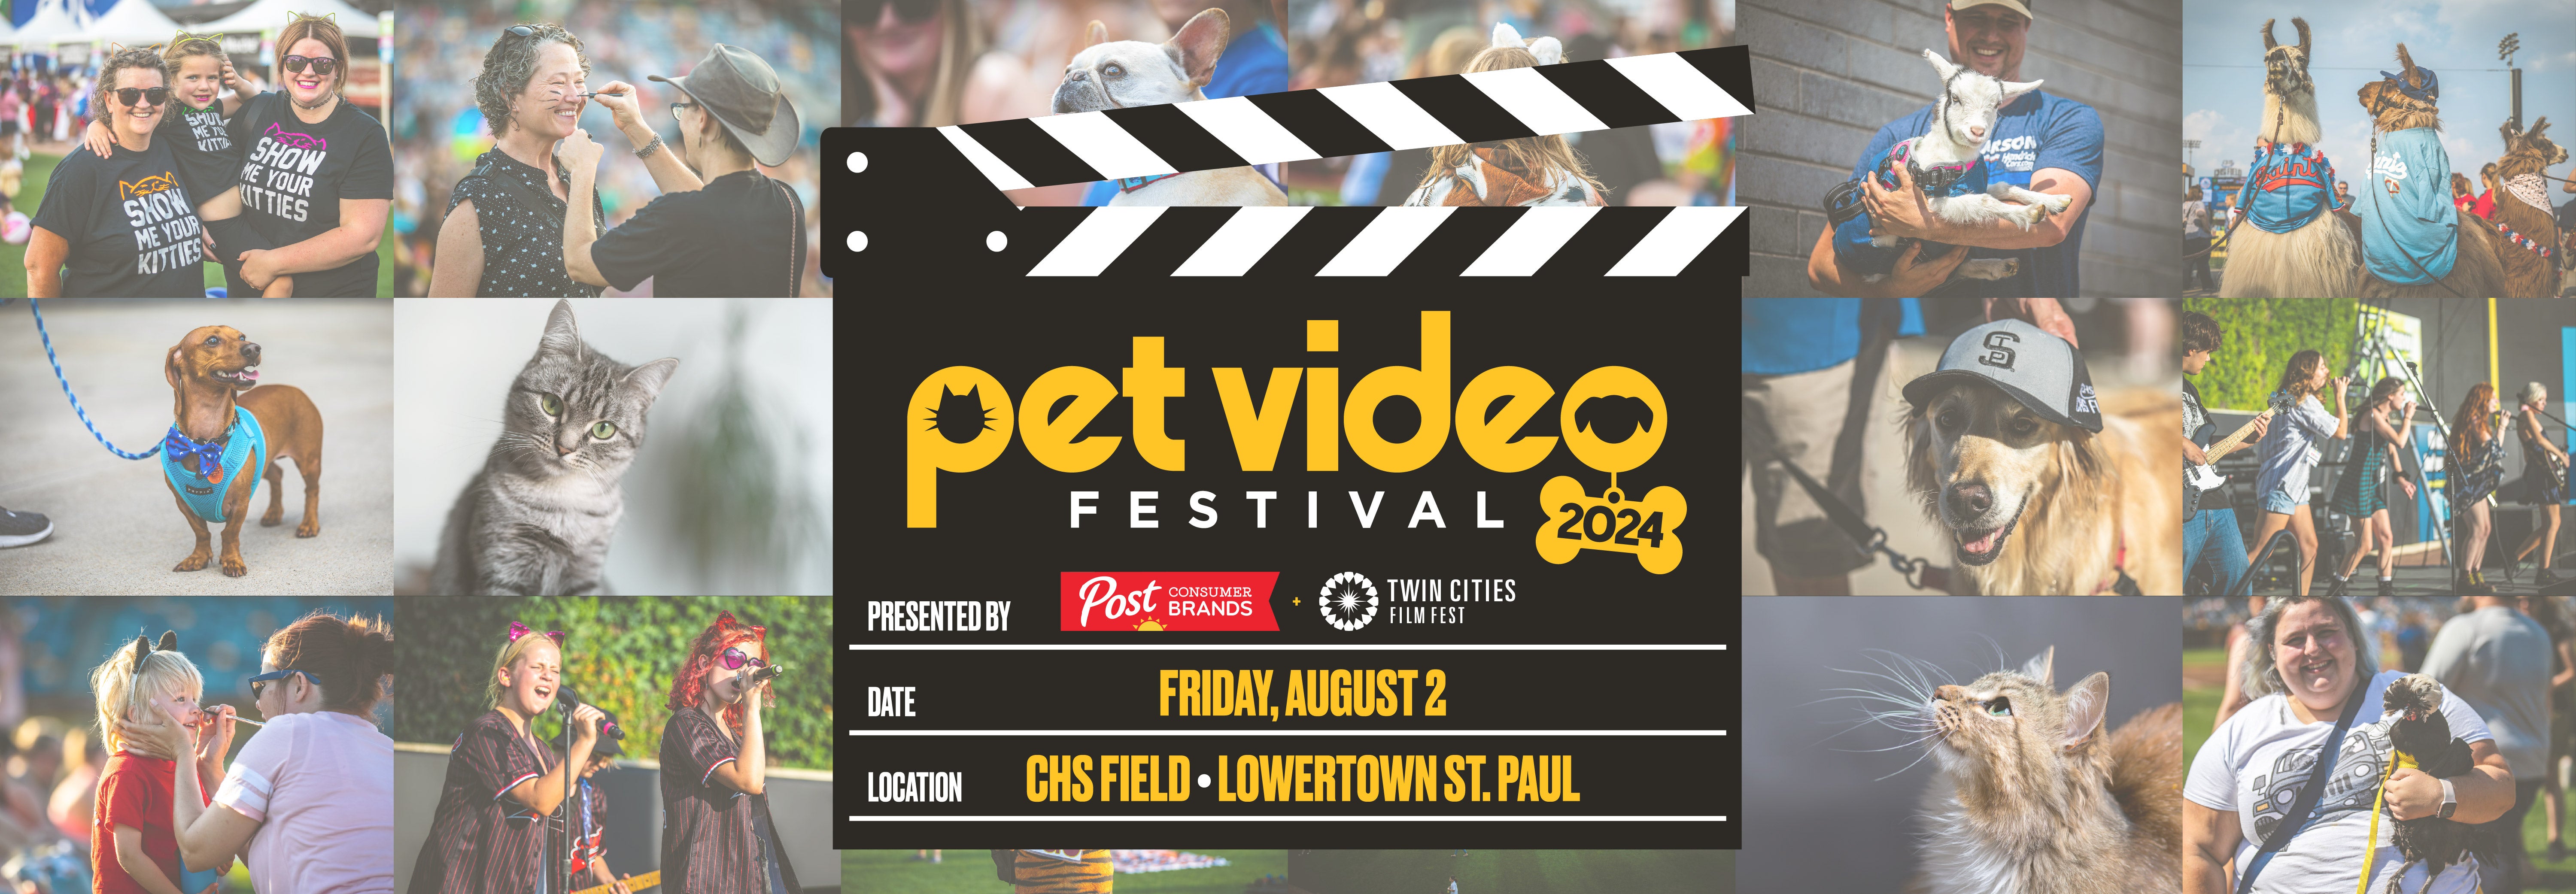 Pet Video Festival